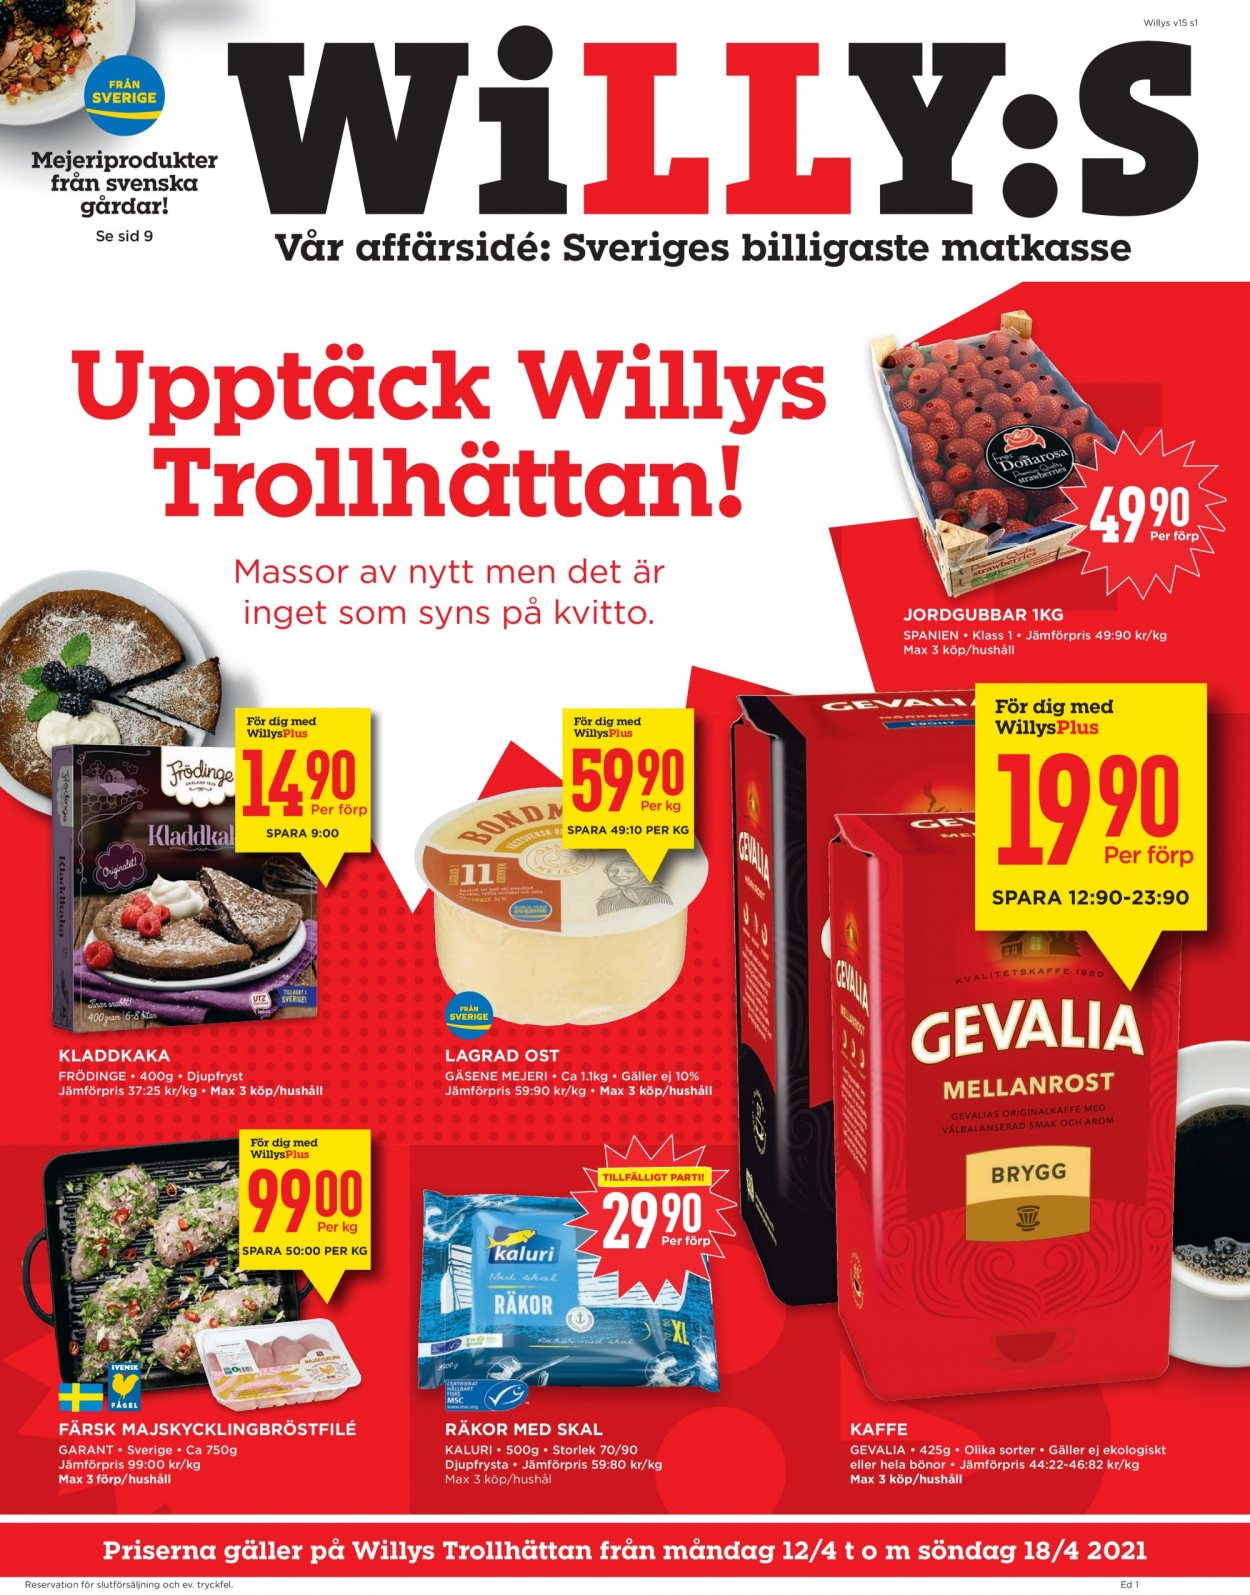 thumbnail - Willys reklamblad - 12/4 2021 - 18/4 2021 - varor från reklamblad - jordgubbe, bönor, räkor, räkor med skal, gäsene mejeri, lagrad ost, ost, kaffe, Gevalia. Sida 1.